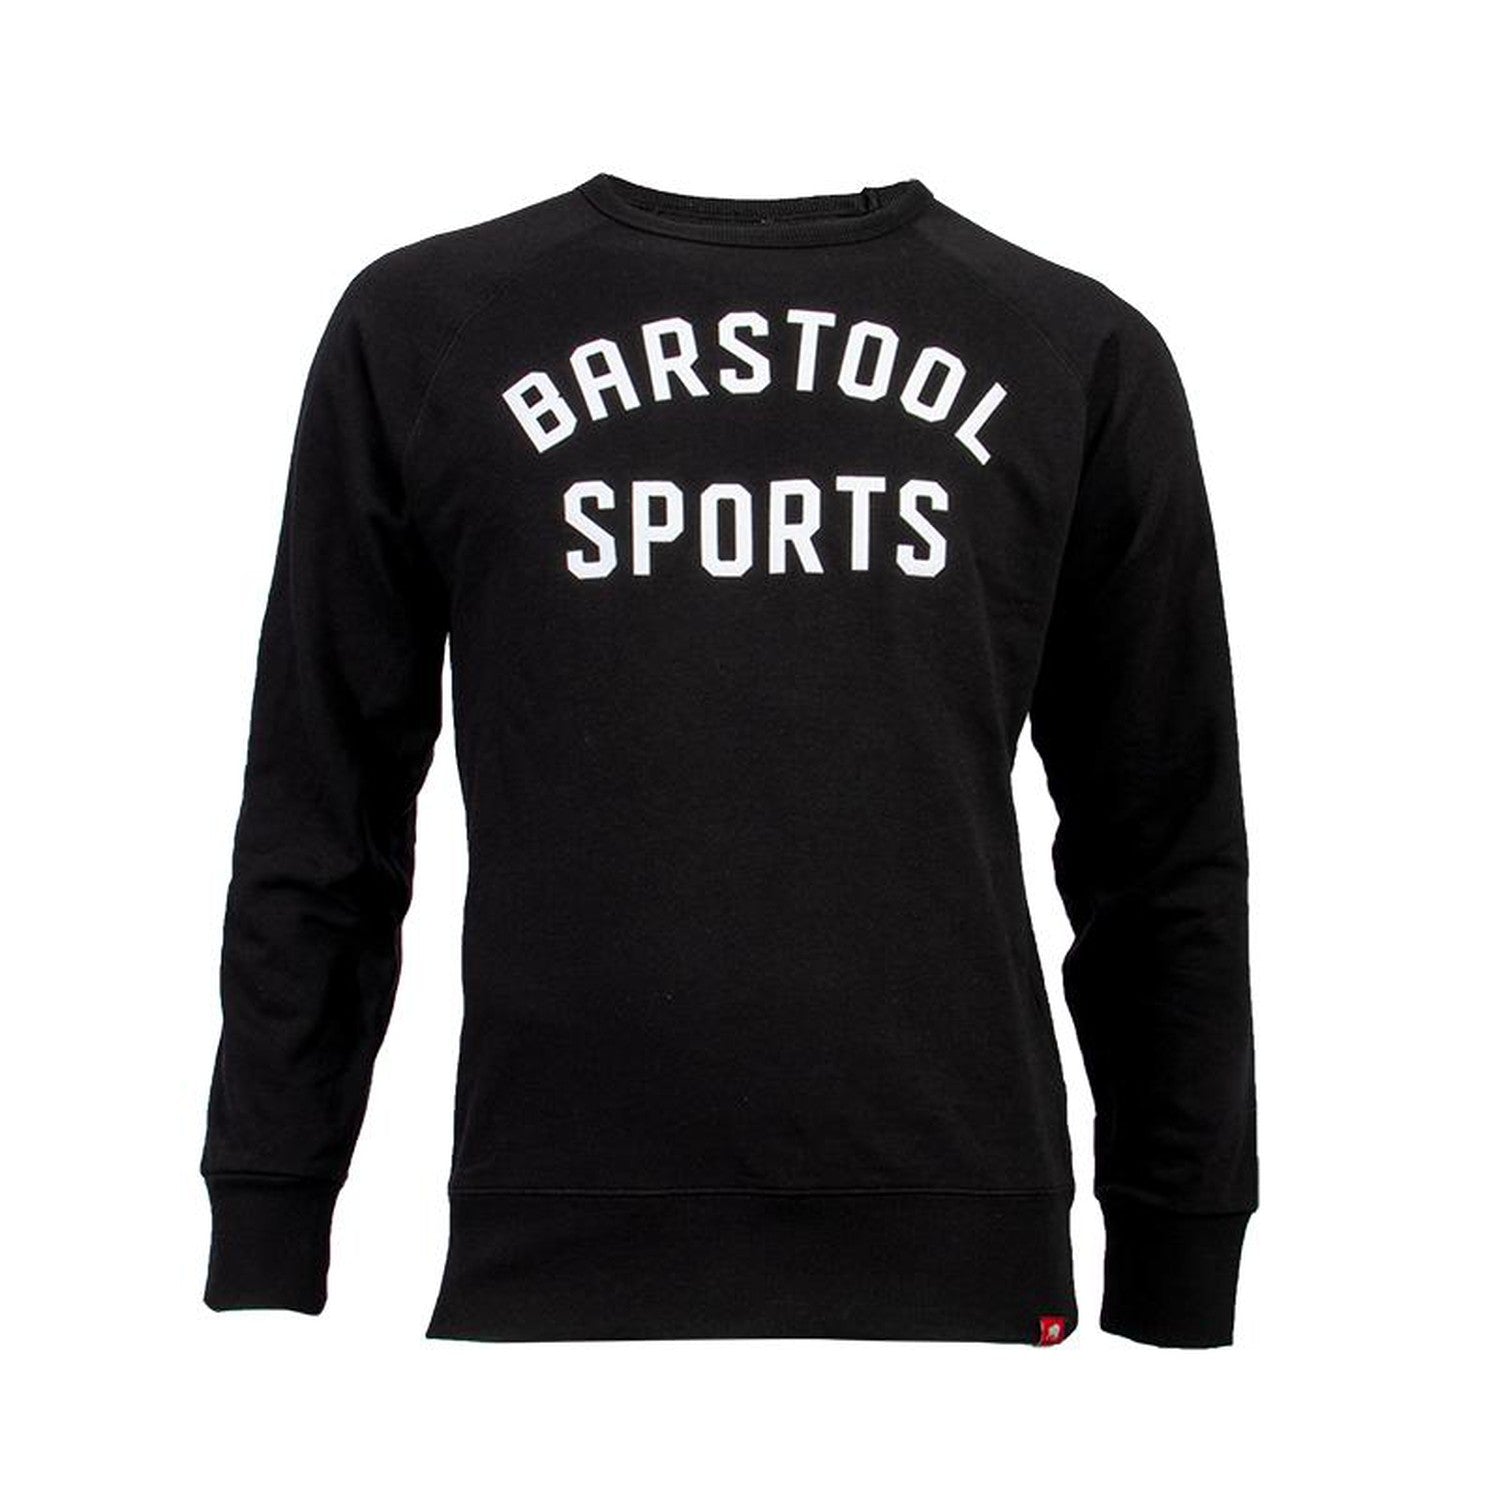 Barstool Sportiqe Applique Newport Crewneck-Crewnecks-Barstool Sports-Black-S-Barstool Sports